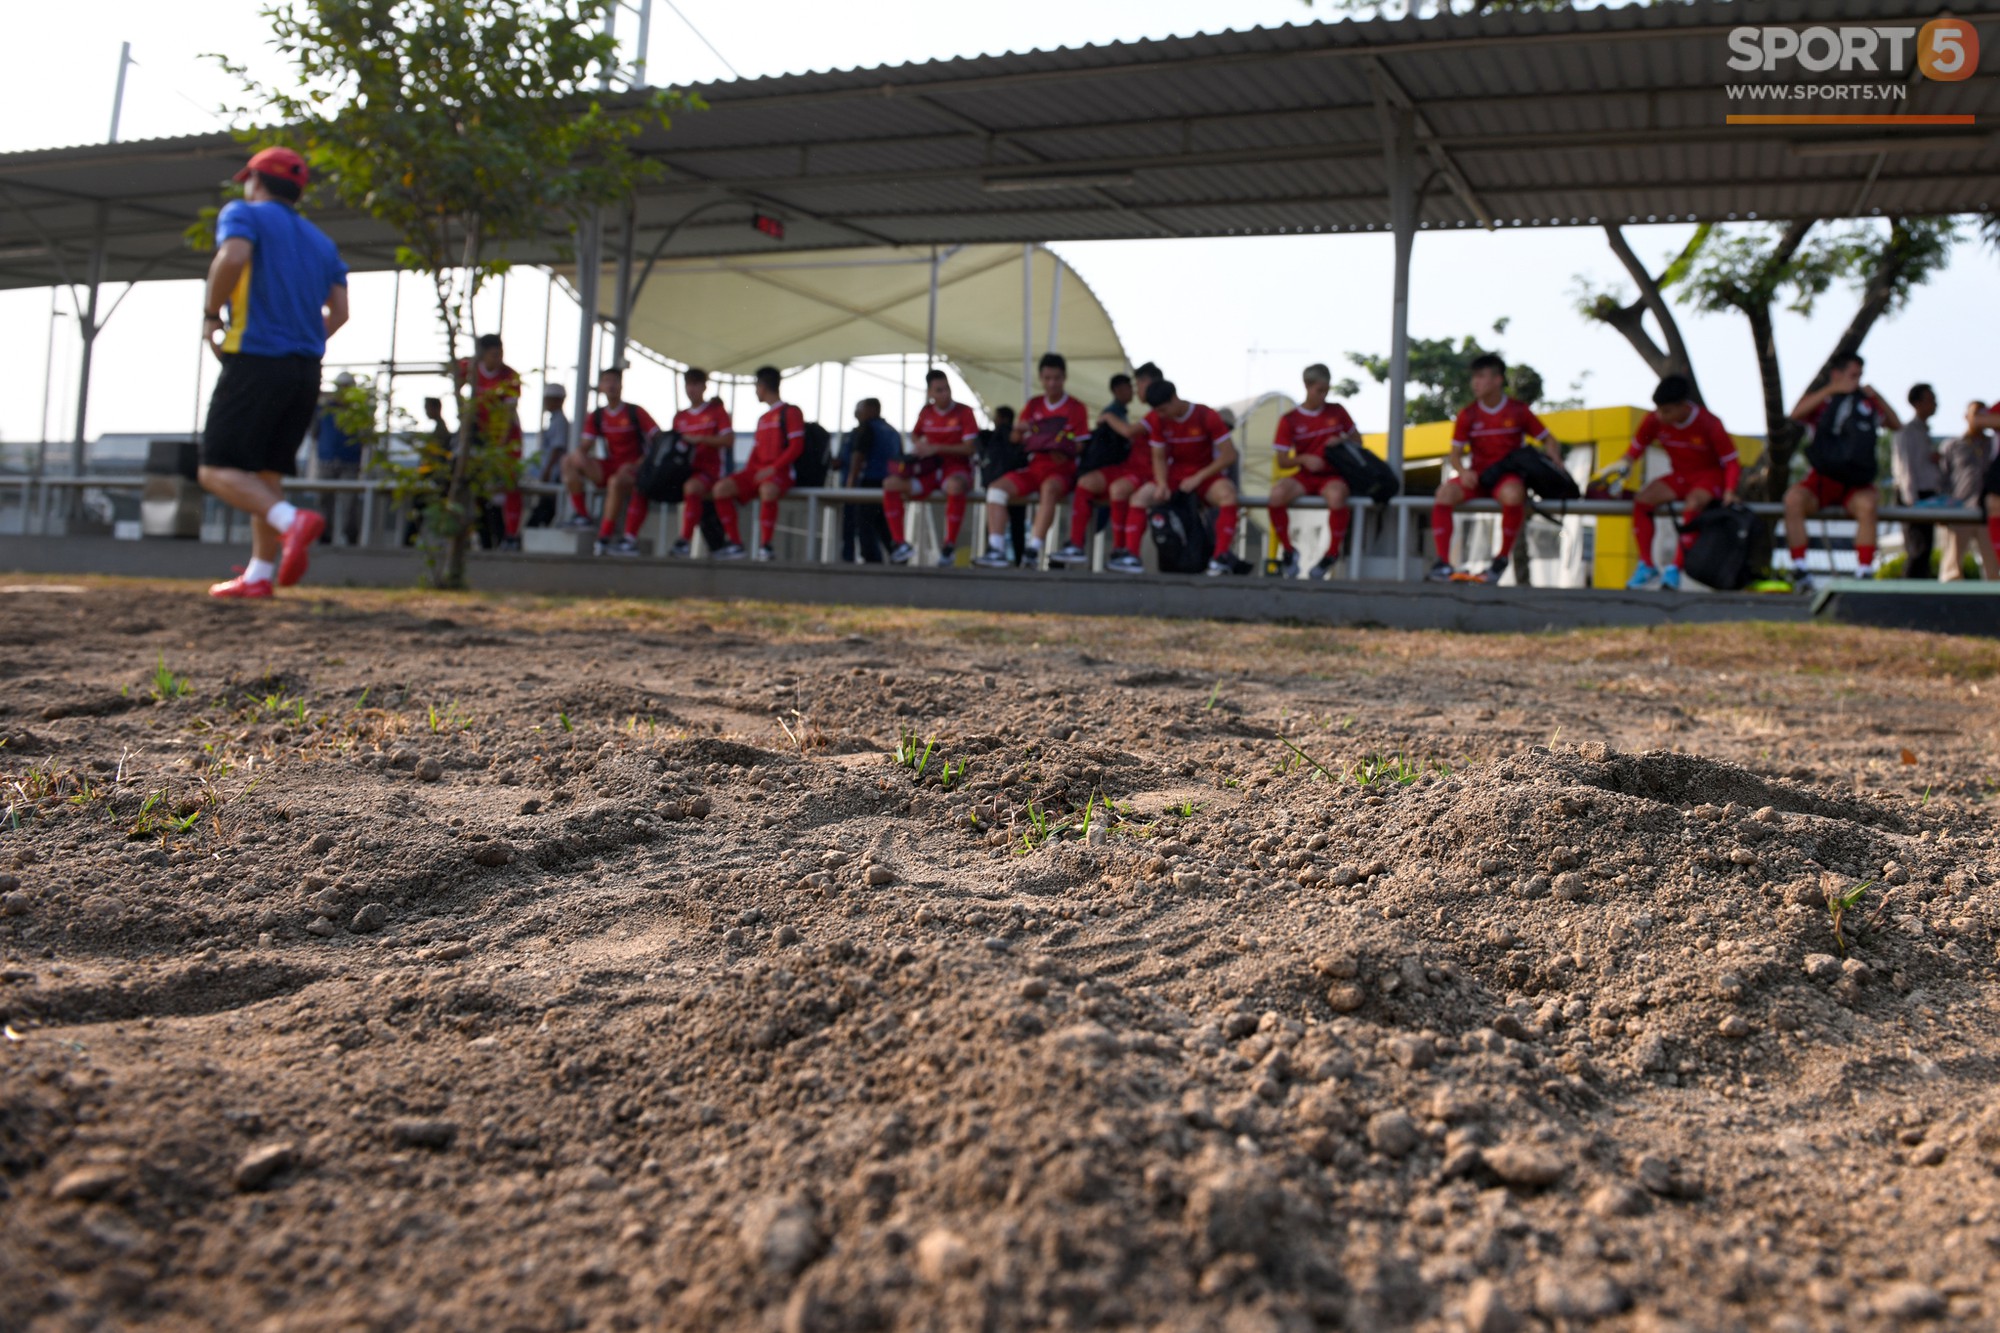 Olympic Việt Nam tập trên mặt sân xấu như ruộng cày - Ảnh 9.